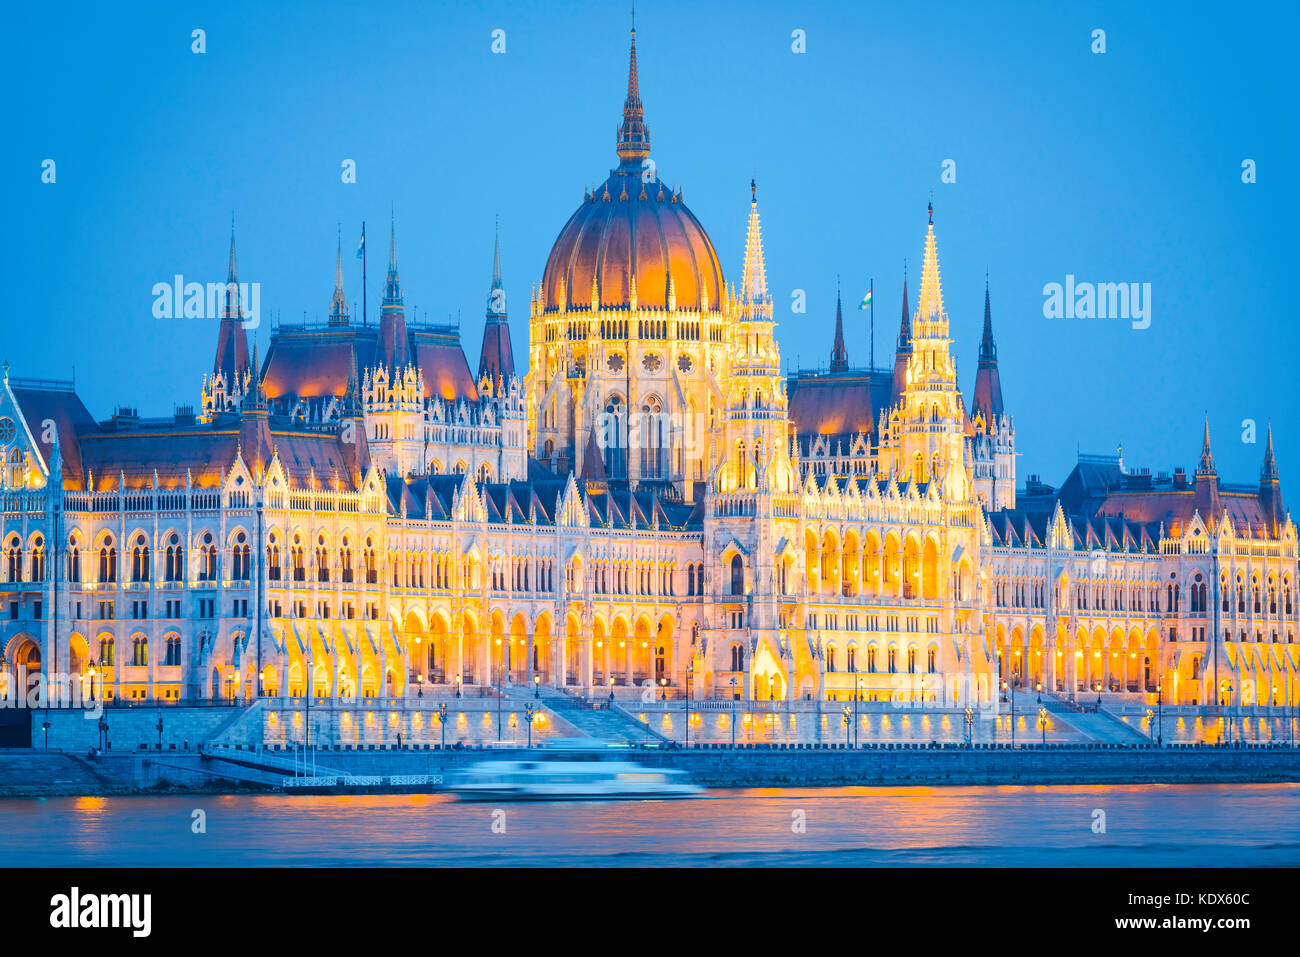 Parlement de Budapest, vue en début de soirée du pittoresque Parlement hongrois illuminé par des projecteurs, Budapest, Hongrie. Banque D'Images